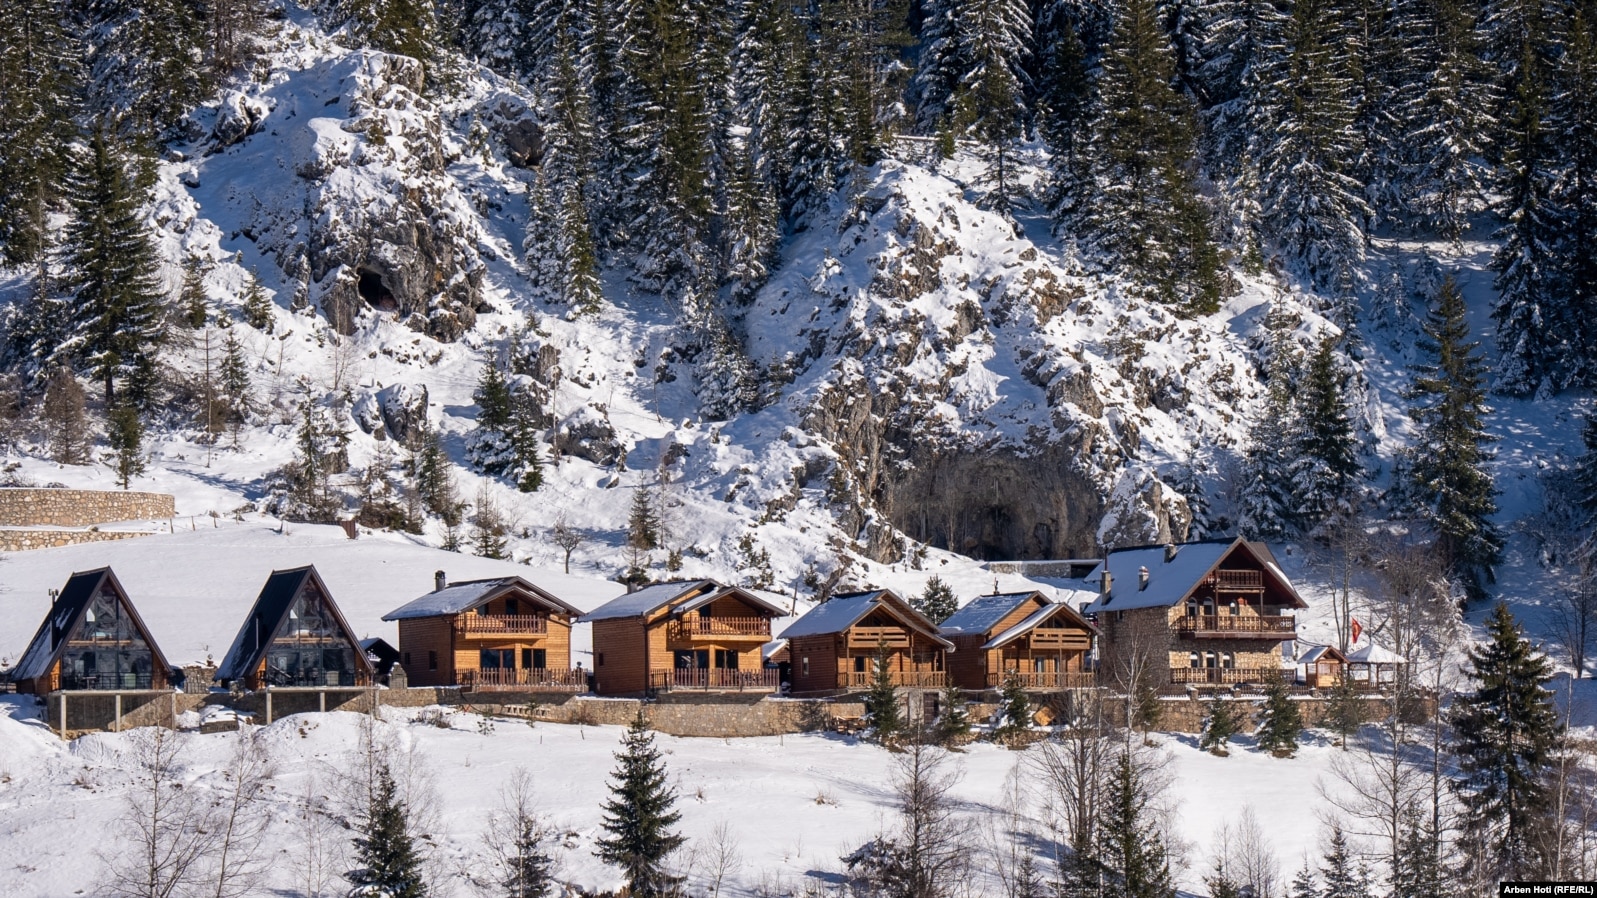 Disa vila të ndërtuara pranë qendrës së skijimit në fshatin Bogë të Pejës.